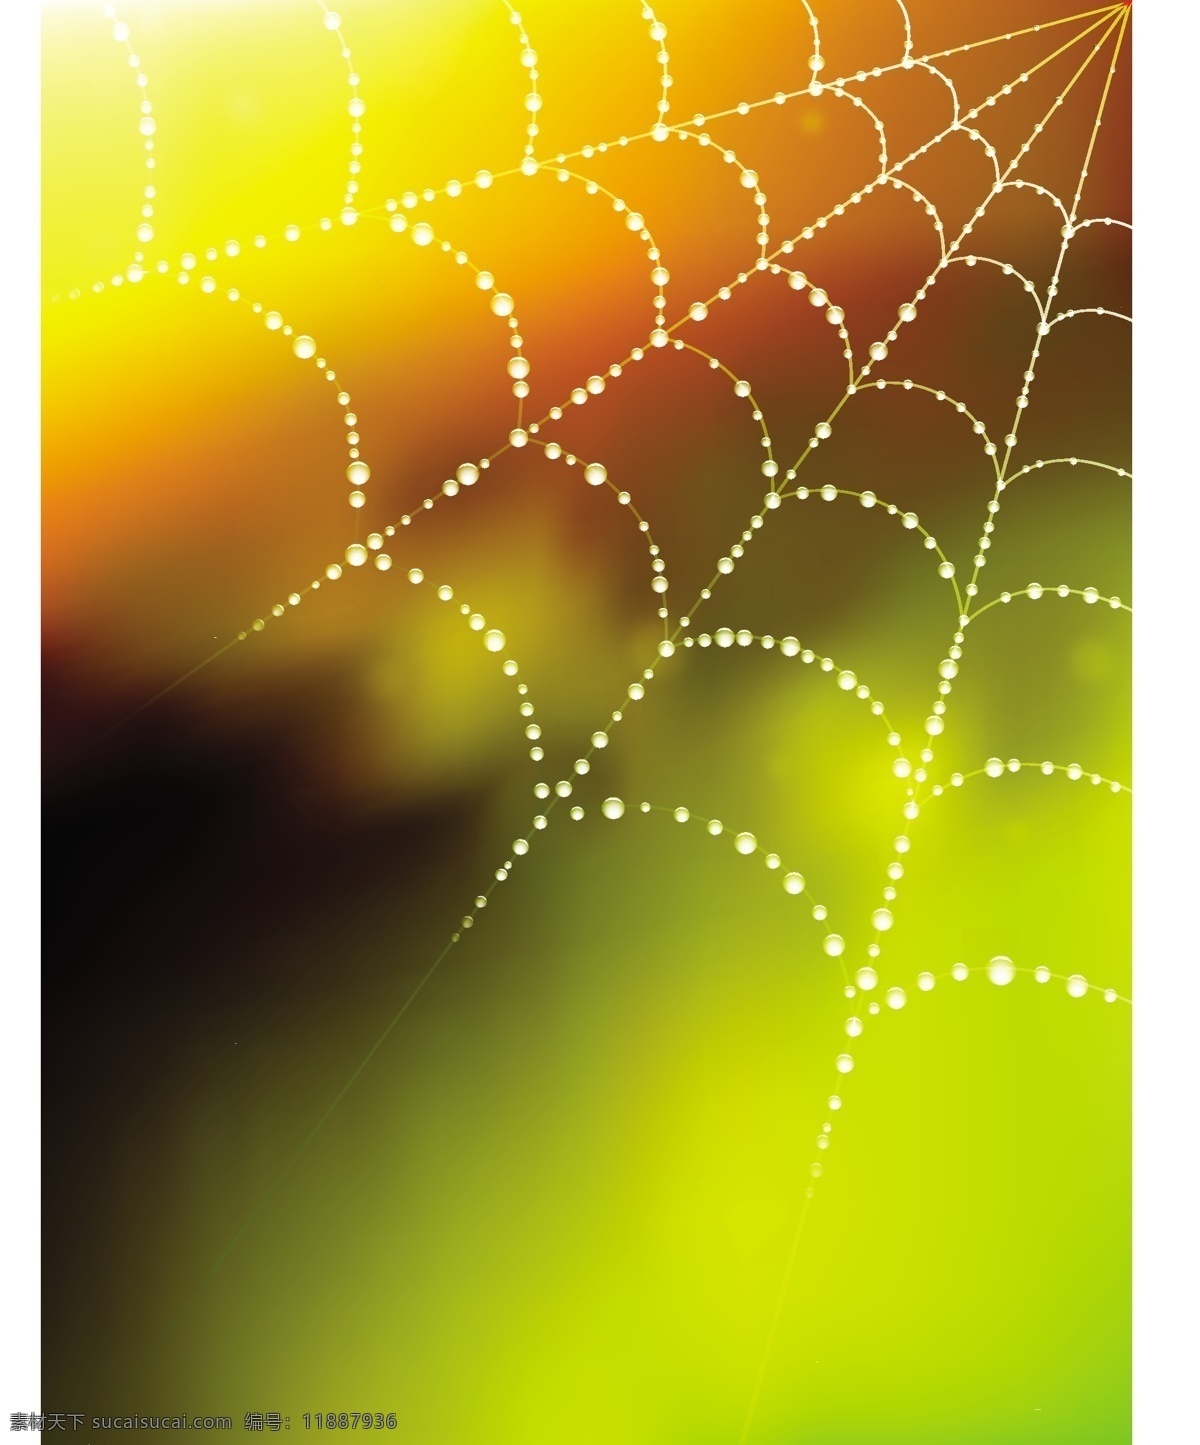 蜘蛛网 矢量图 网状背景 蜘蛛网背景图 其他矢量图